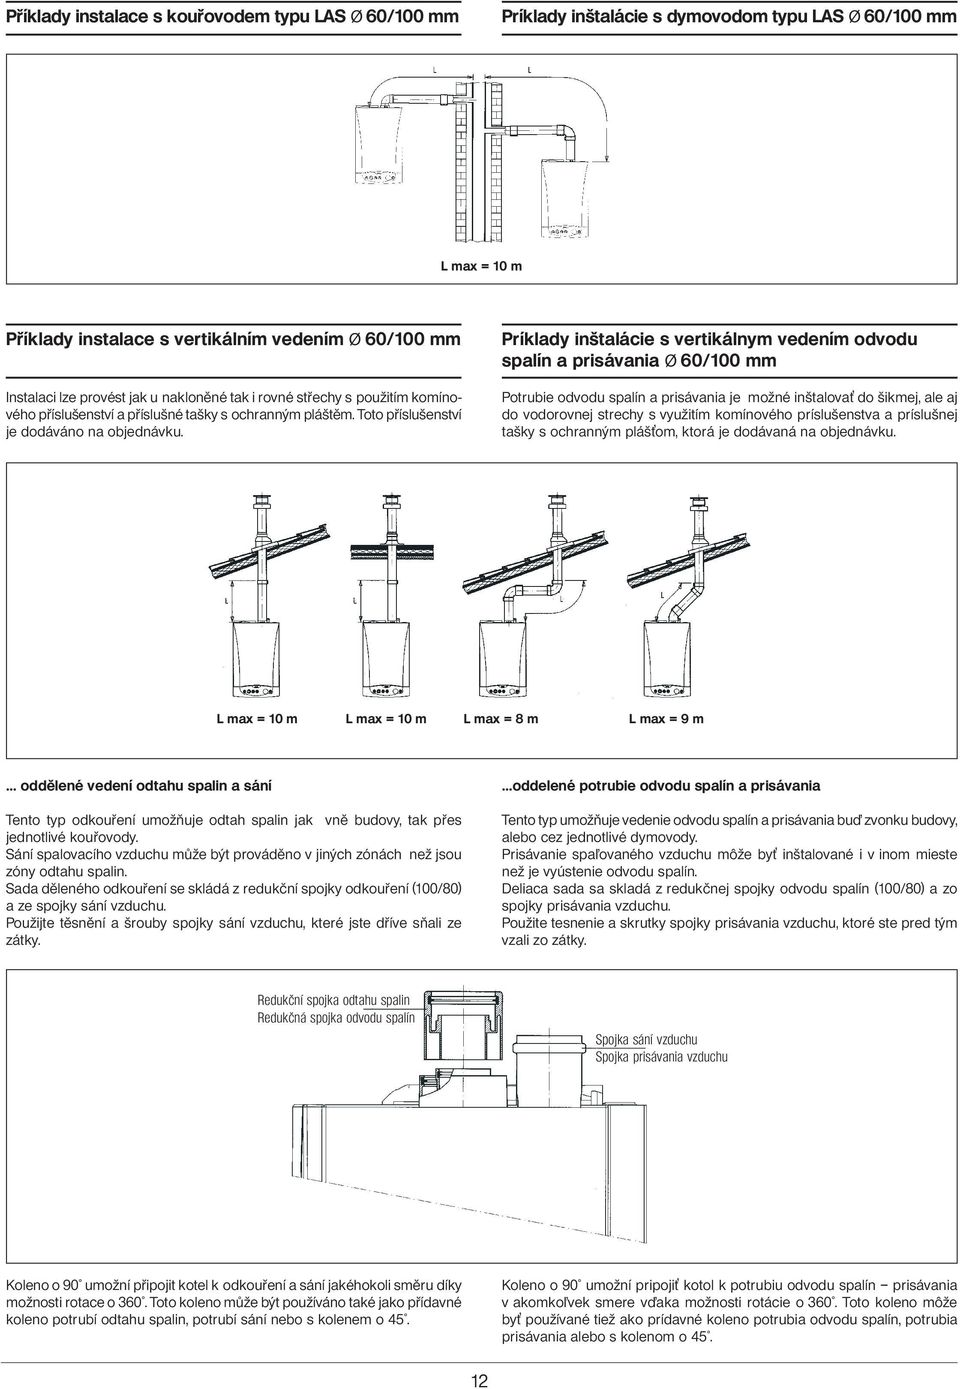 Príklady inštalácie s vertikálnym vedením odvodu spalín a prisávania Ø 60/100 mm Potrubie odvodu spalín a prisávania je možné inštalova do šikmej, ale aj do vodorovnej strechy s využitím komínového